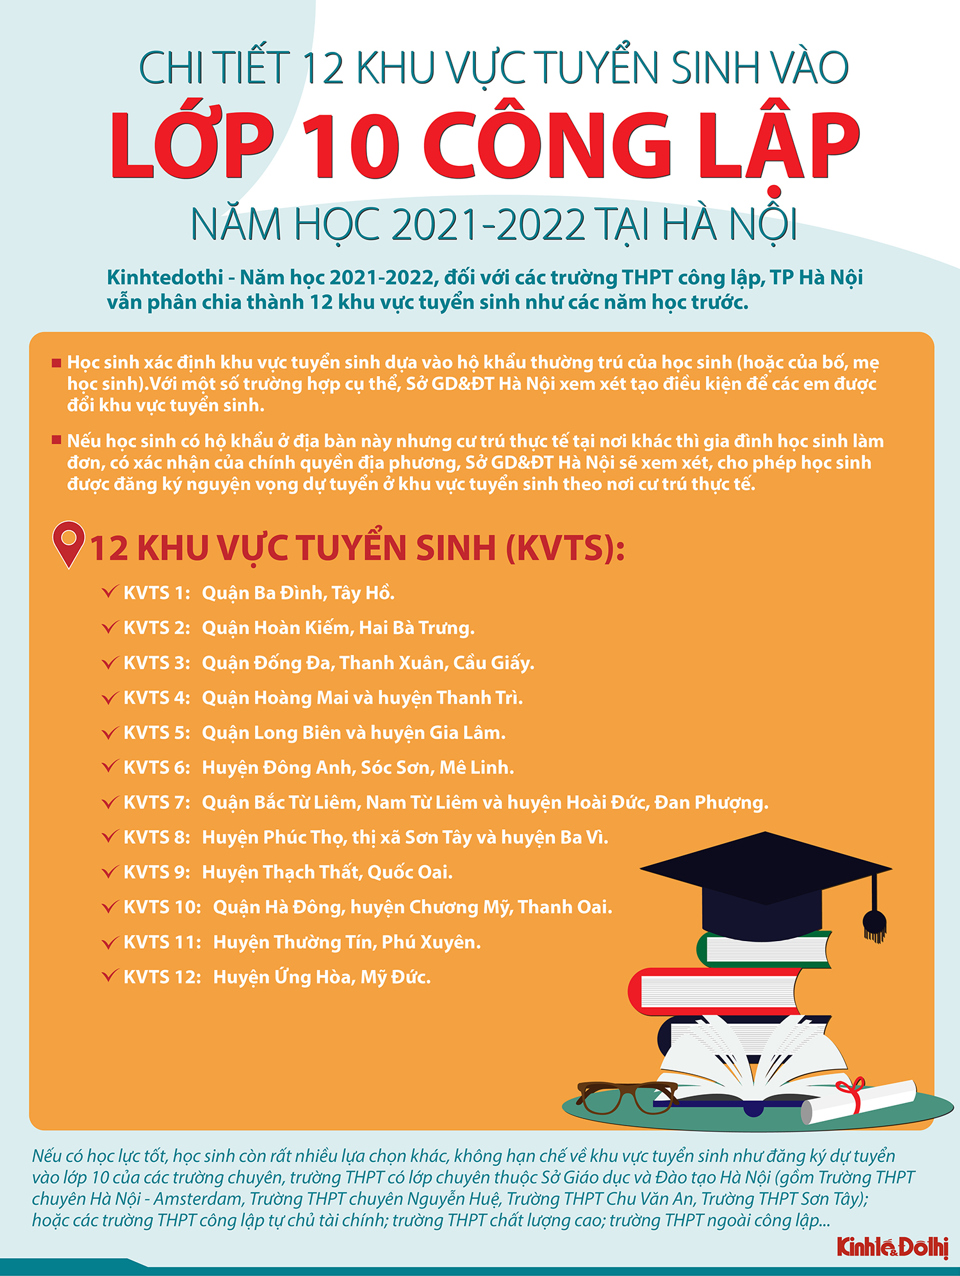 [Infographic] Chi tiết 12 khu vực tuyển sinh vào lớp 10 công lập năm học 2021 - 2022 tại Hà Nội - Ảnh 1